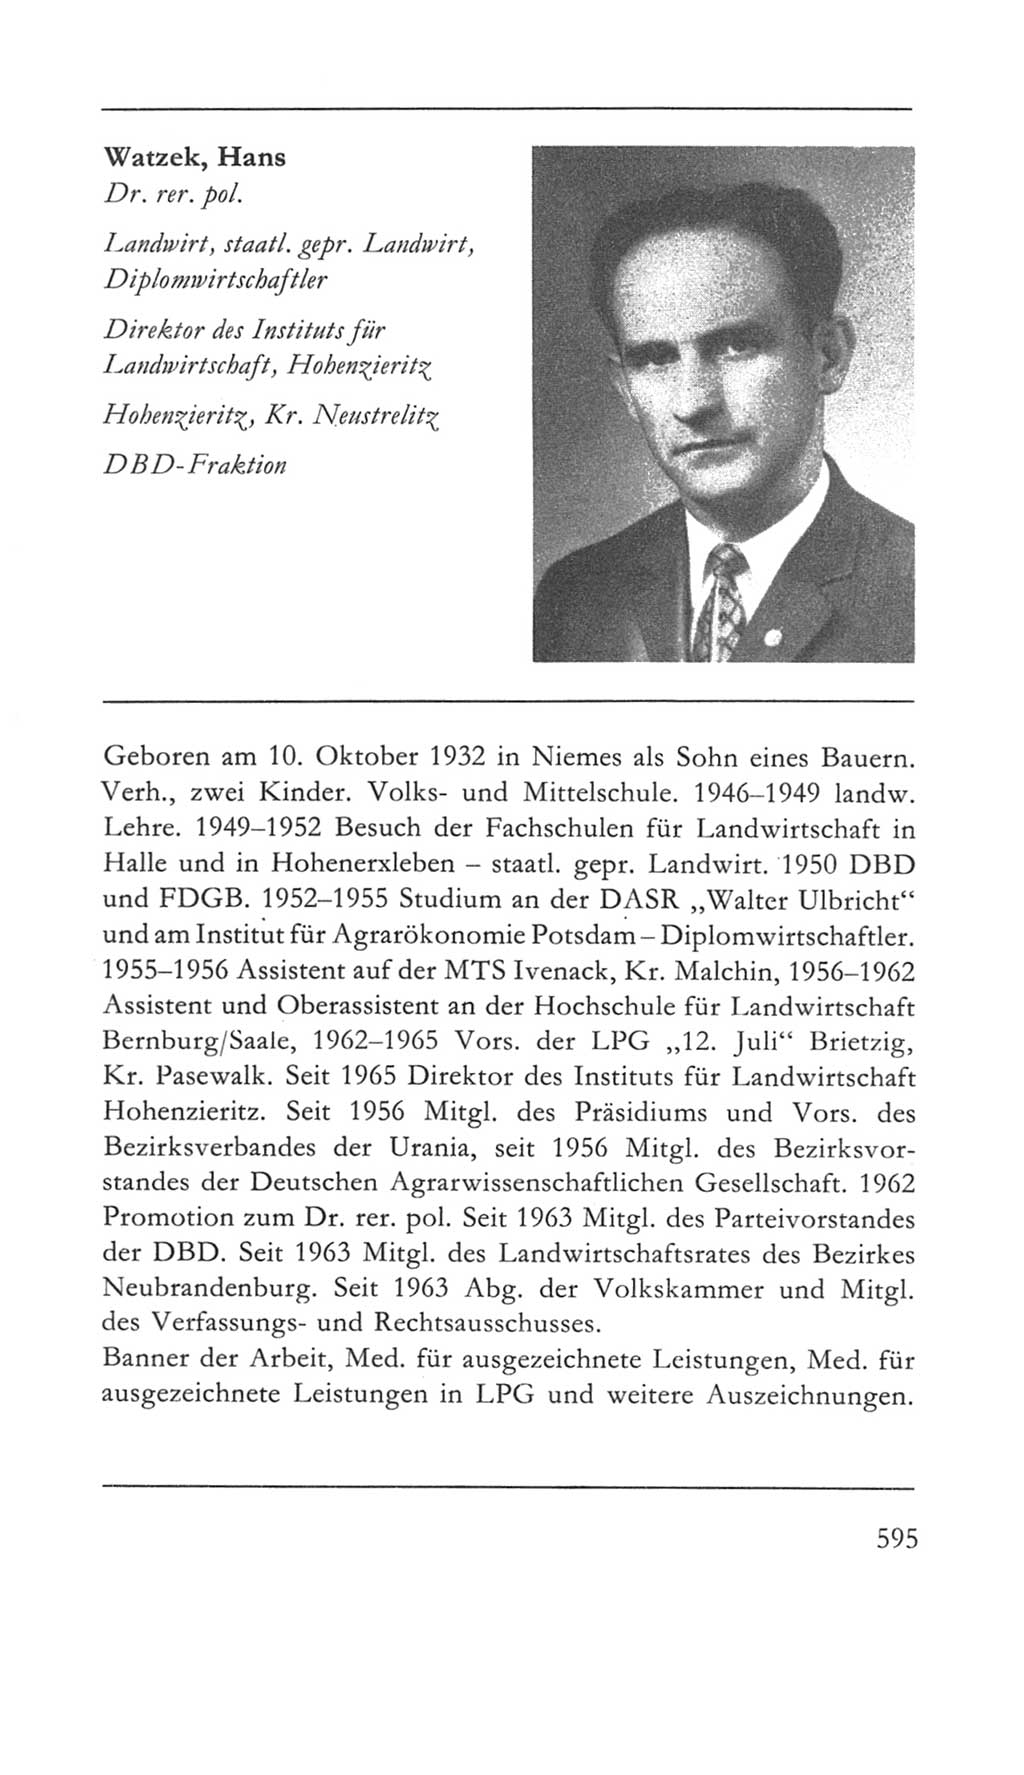 Volkskammer (VK) der Deutschen Demokratischen Republik (DDR) 5. Wahlperiode 1967-1971, Seite 595 (VK. DDR 5. WP. 1967-1971, S. 595)